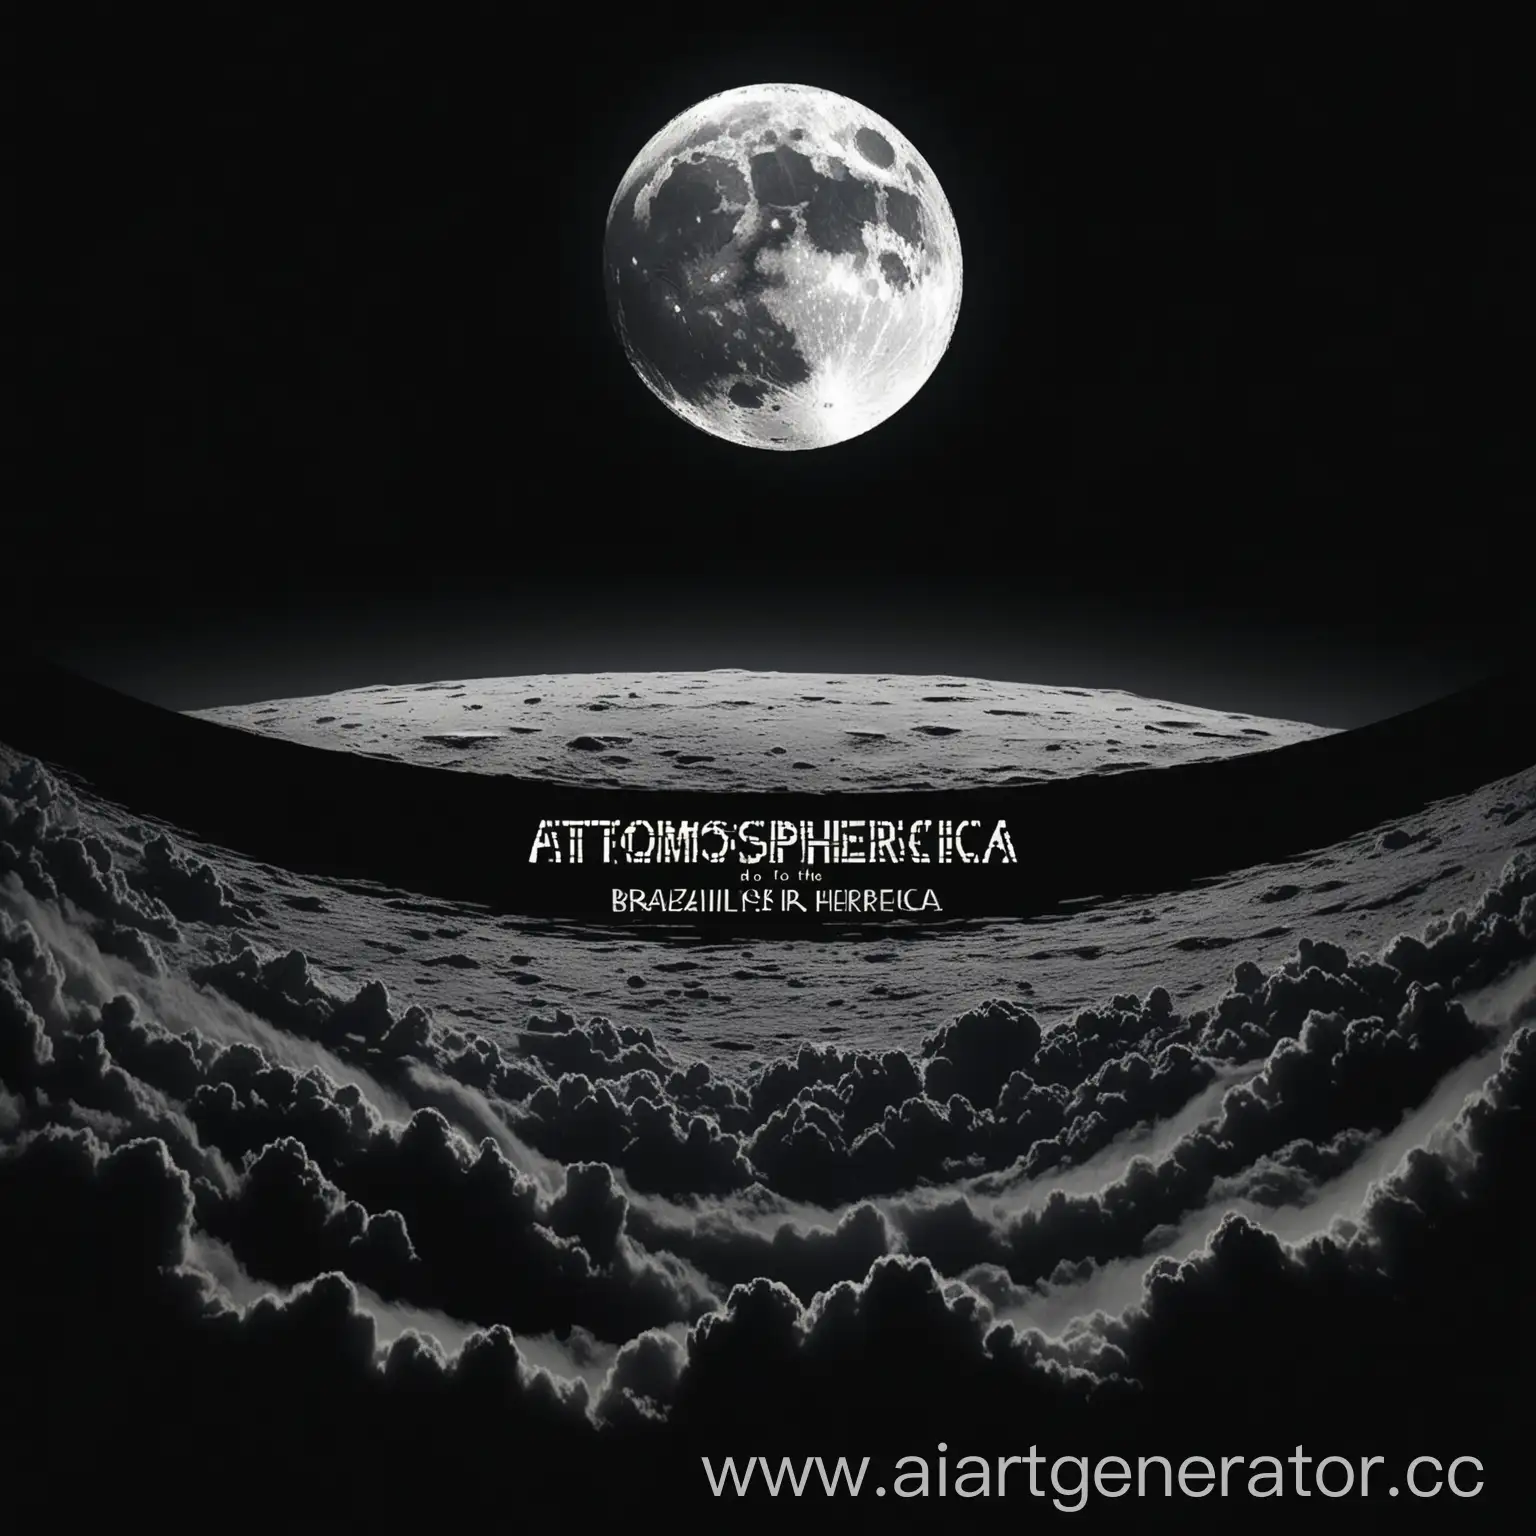 Черная картинка и по середине написано Playlist Brazilian's do atmospherica сверху черная луна